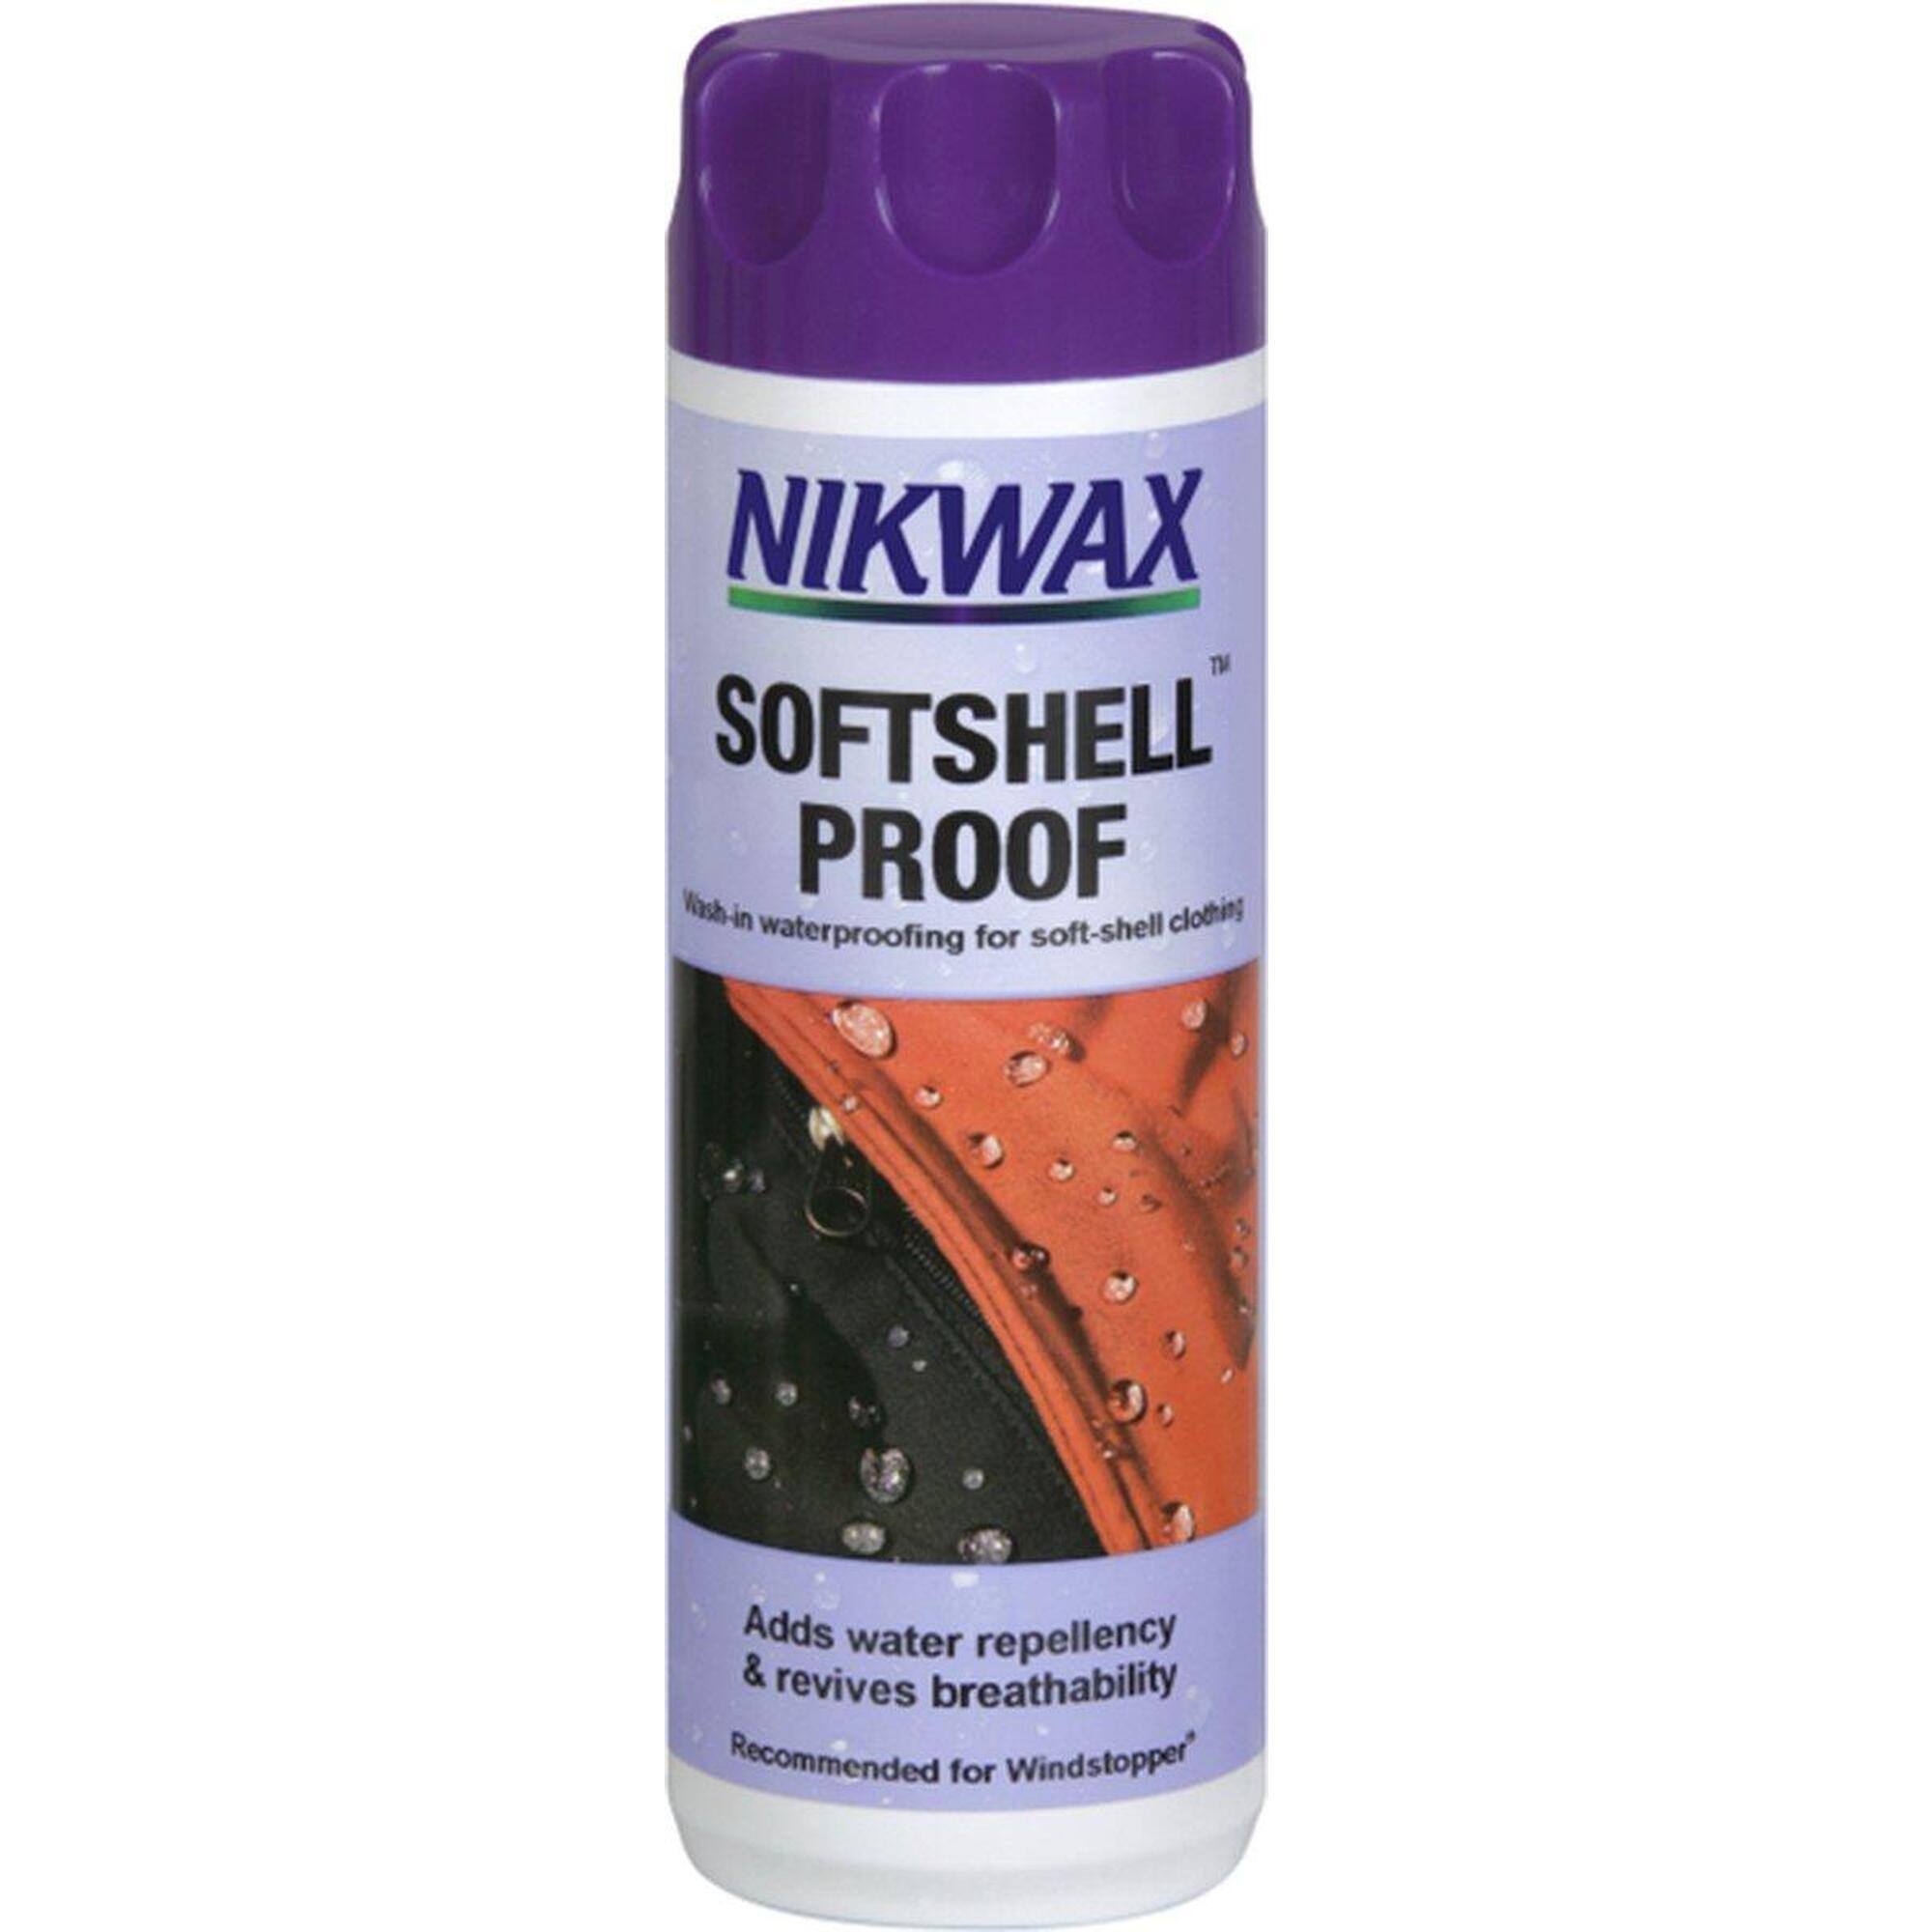 Impregnat do odzieży Nikwax Softshell Proof Wash-In 300 ml